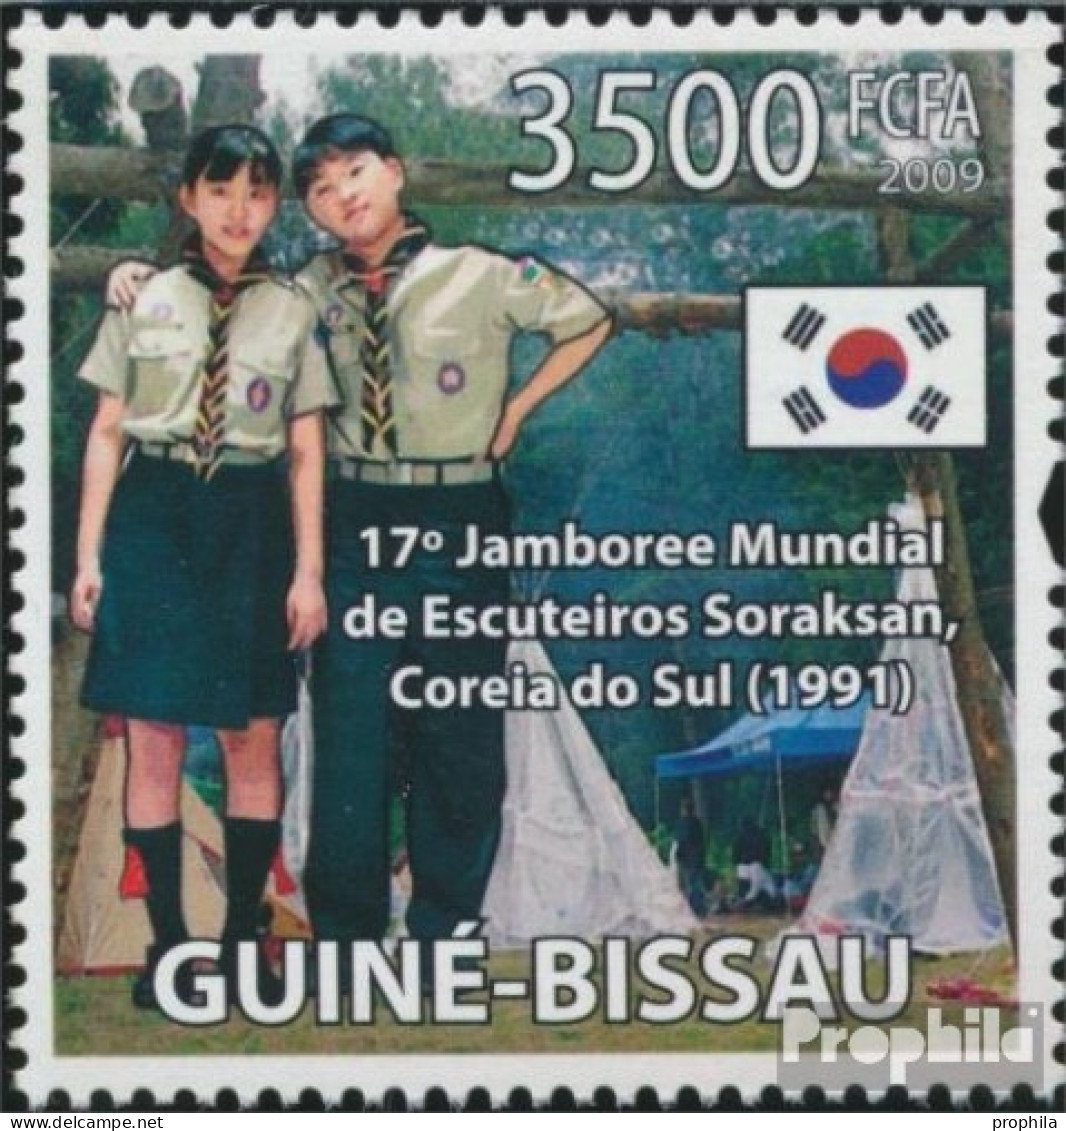 Guinea-Bissau 4431 (kompl. Ausgabe) Postfrisch 2009 Weltpfadfindertreffen - Guinea-Bissau